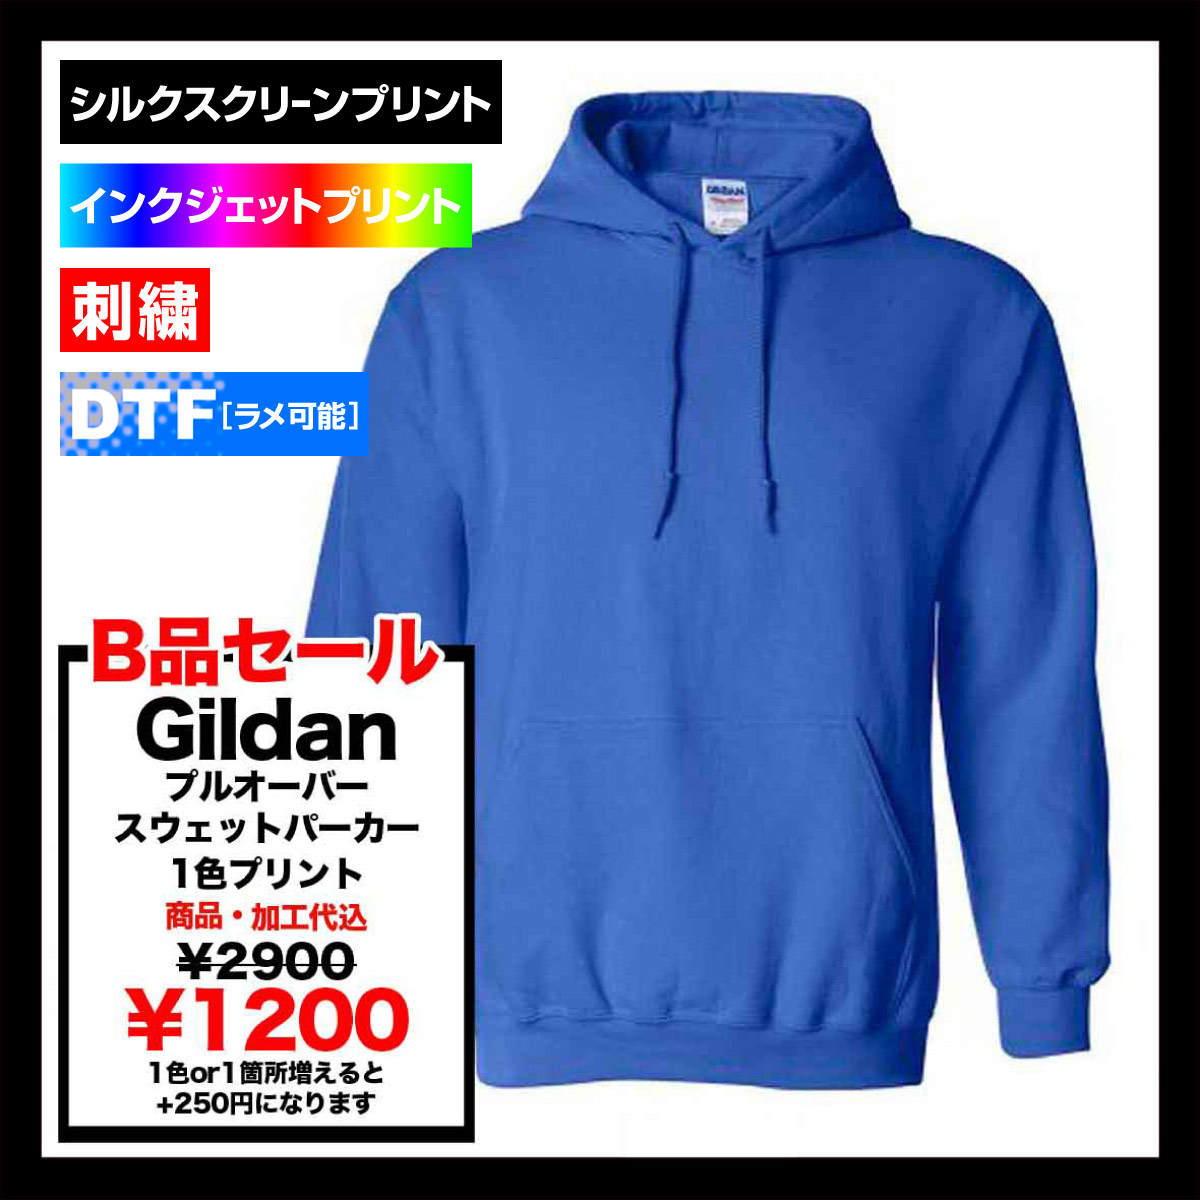 【B品SALE】 GILDAN ギルダン 8.0 oz ヘビーブレンドプルオーバーパーカー (裏起毛) (品番1850_IQ)